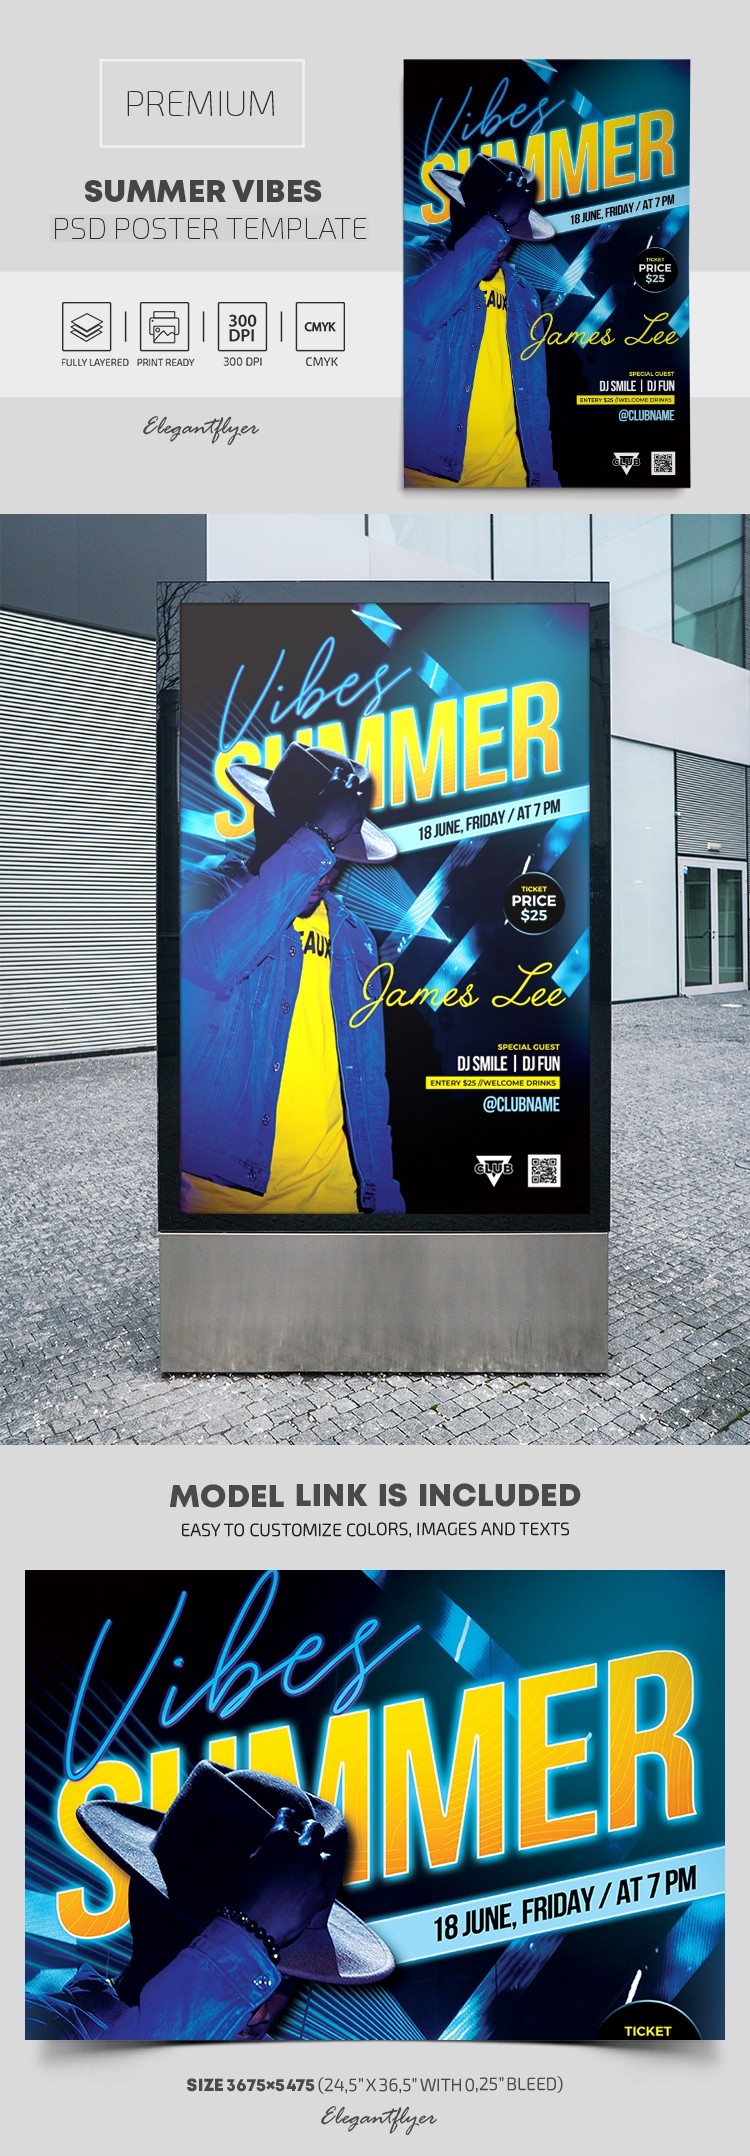 Sommer Vibes Poster by ElegantFlyer